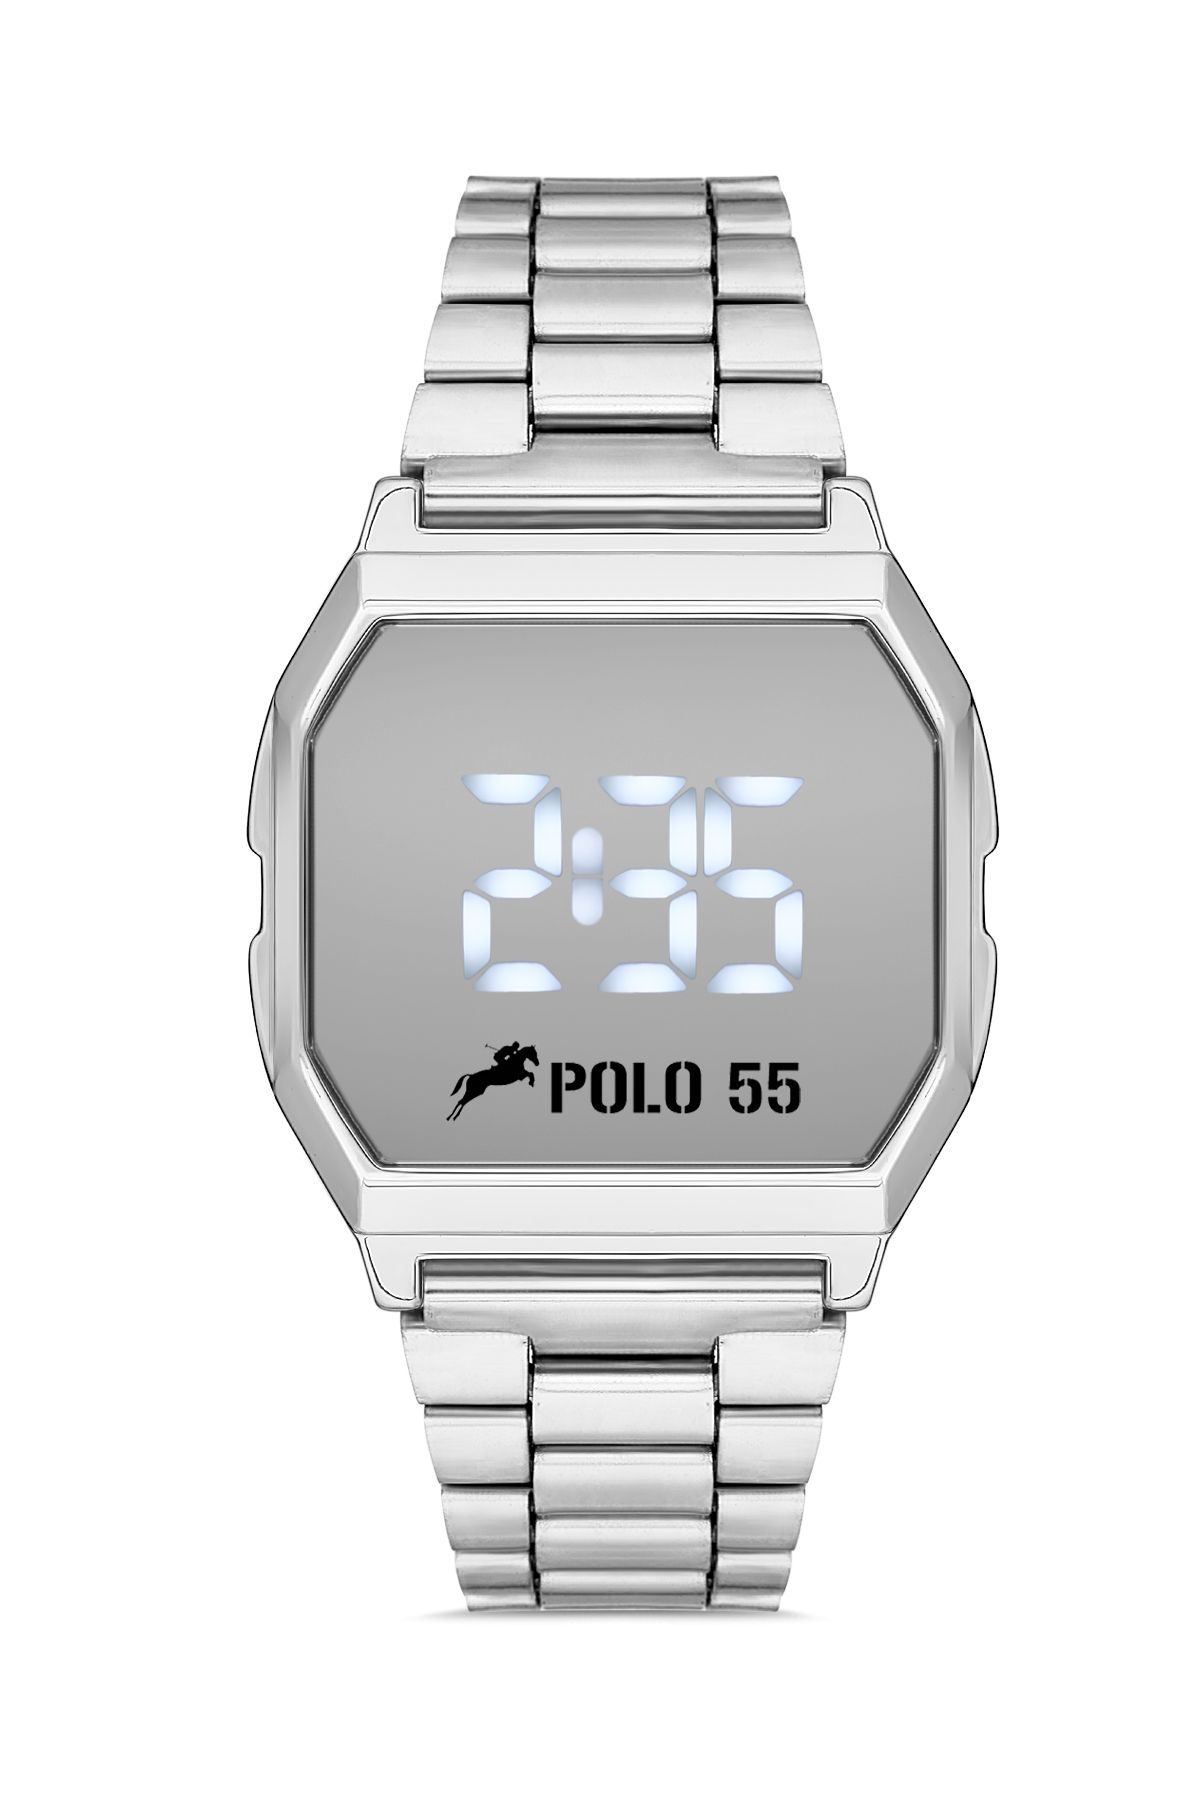 Polo55 Gümüş Zamansız Tasarım Dokunmatik Dijital Metal Kordon Retro Erkek Kol Saati